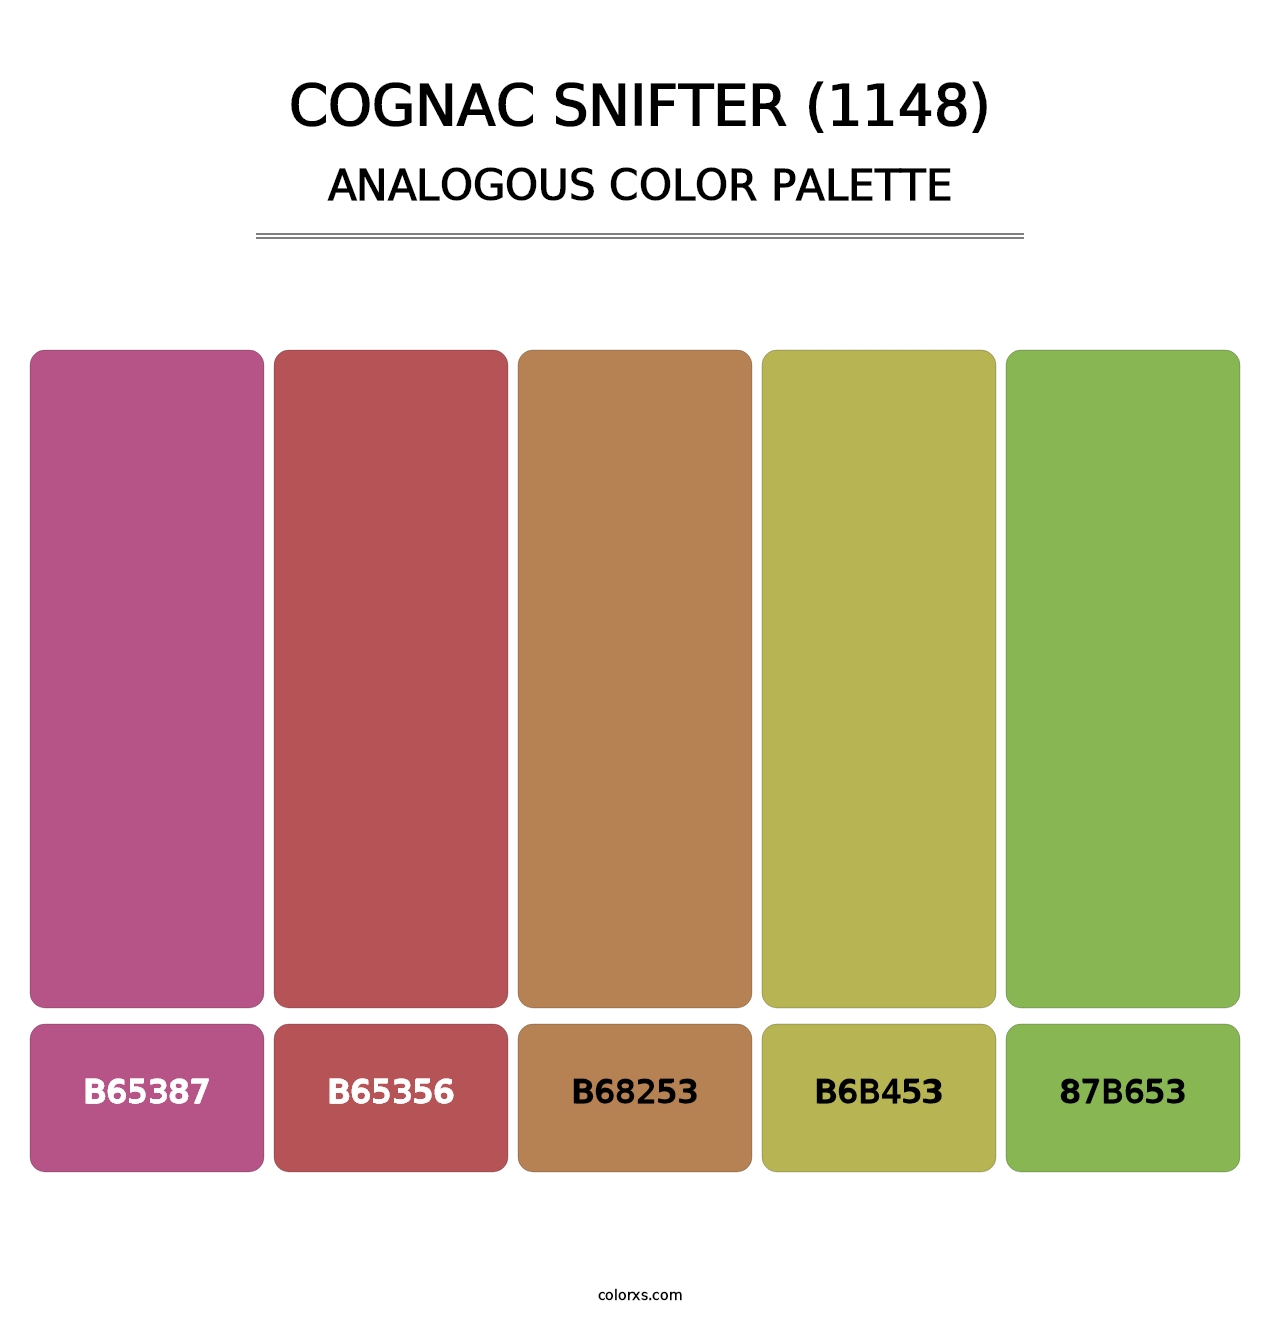 Cognac Snifter (1148) - Analogous Color Palette